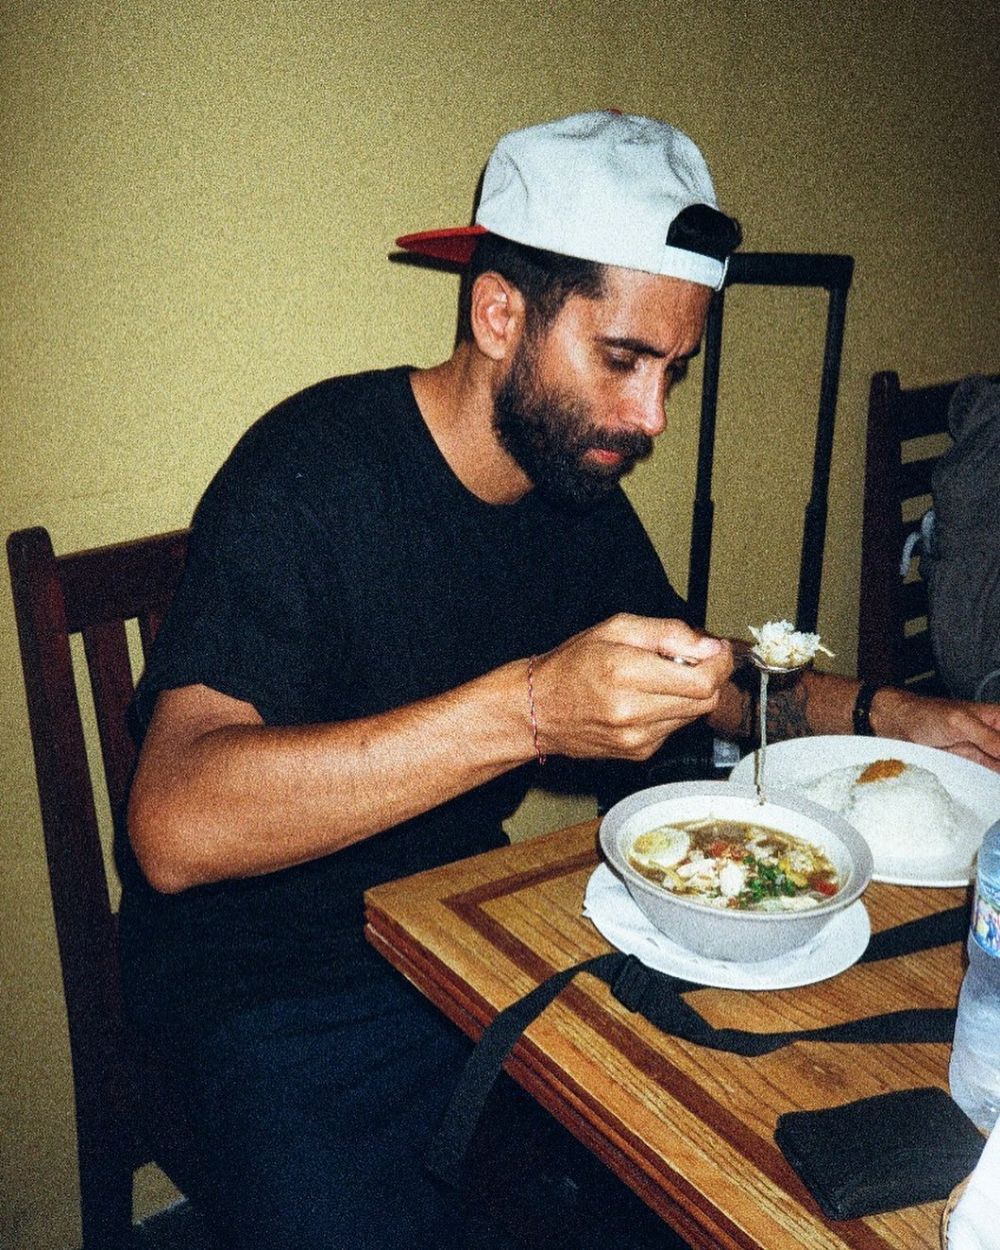 Jim makan soto